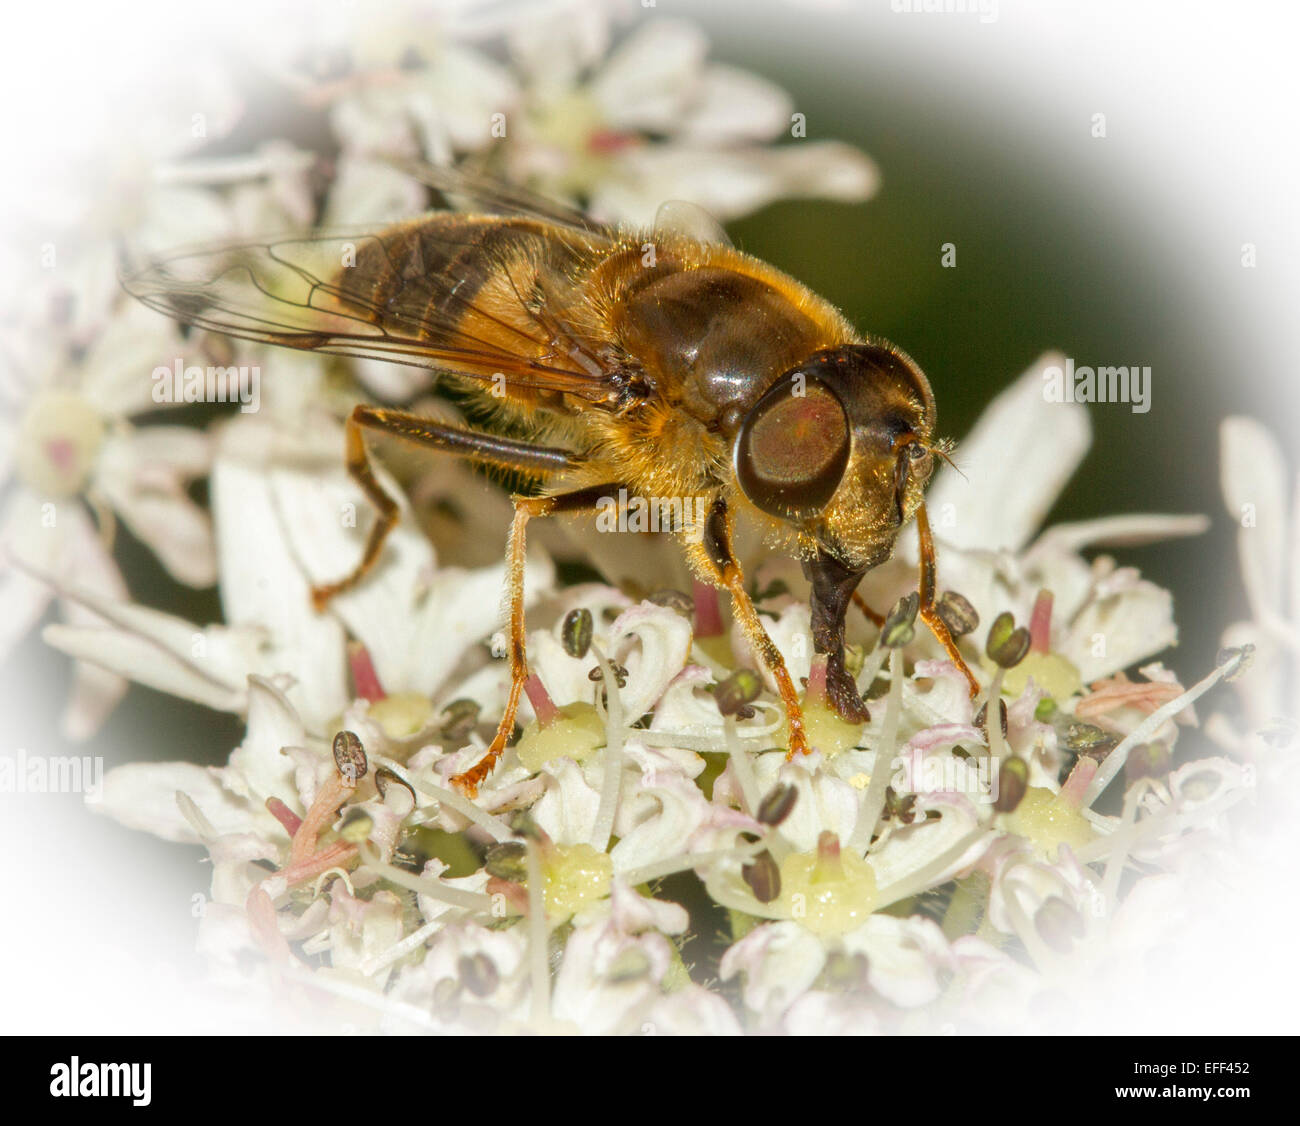 Spektakuläre Makro Bild der Biene, mit großen Augen und Rüssel deutlich sichtbar, Fütterung auf Cluster von weißen Wildblumen Stockfoto